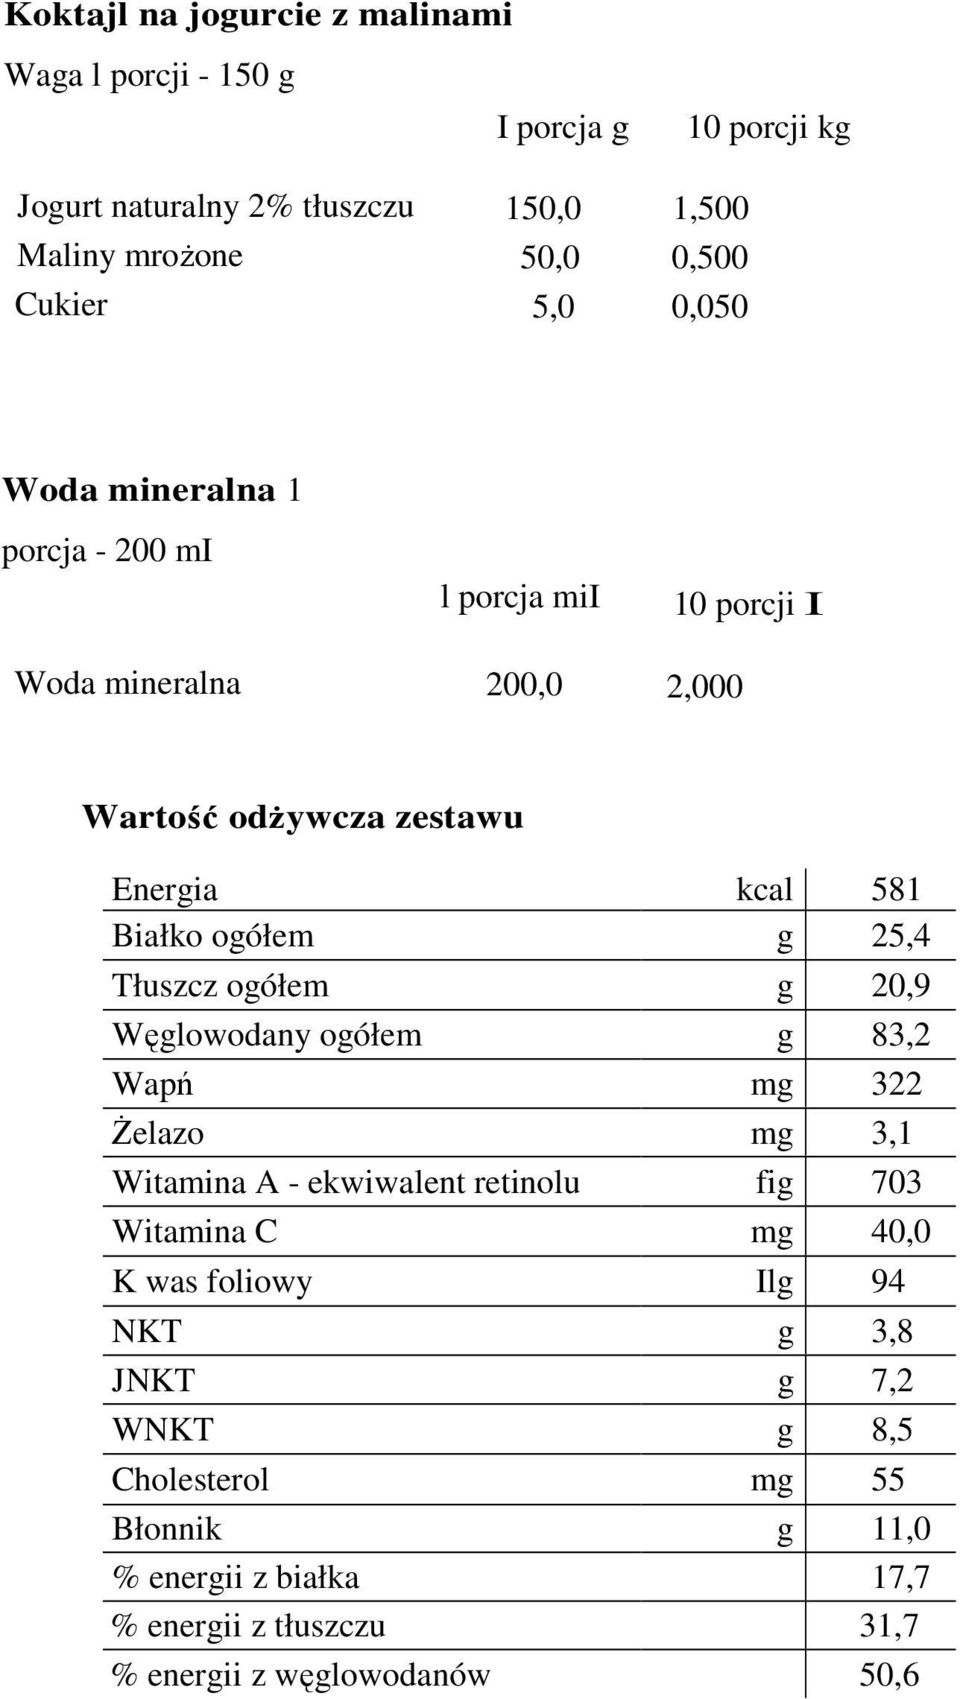 g 25,4 Tłuszcz ogółem g 20,9 Węglowodany ogółem g 83,2 Wapń mg 322 śelazo mg 3,1 Witamina A - ekwiwalent retinolu fig 703 Witamina C mg 40,0 K was